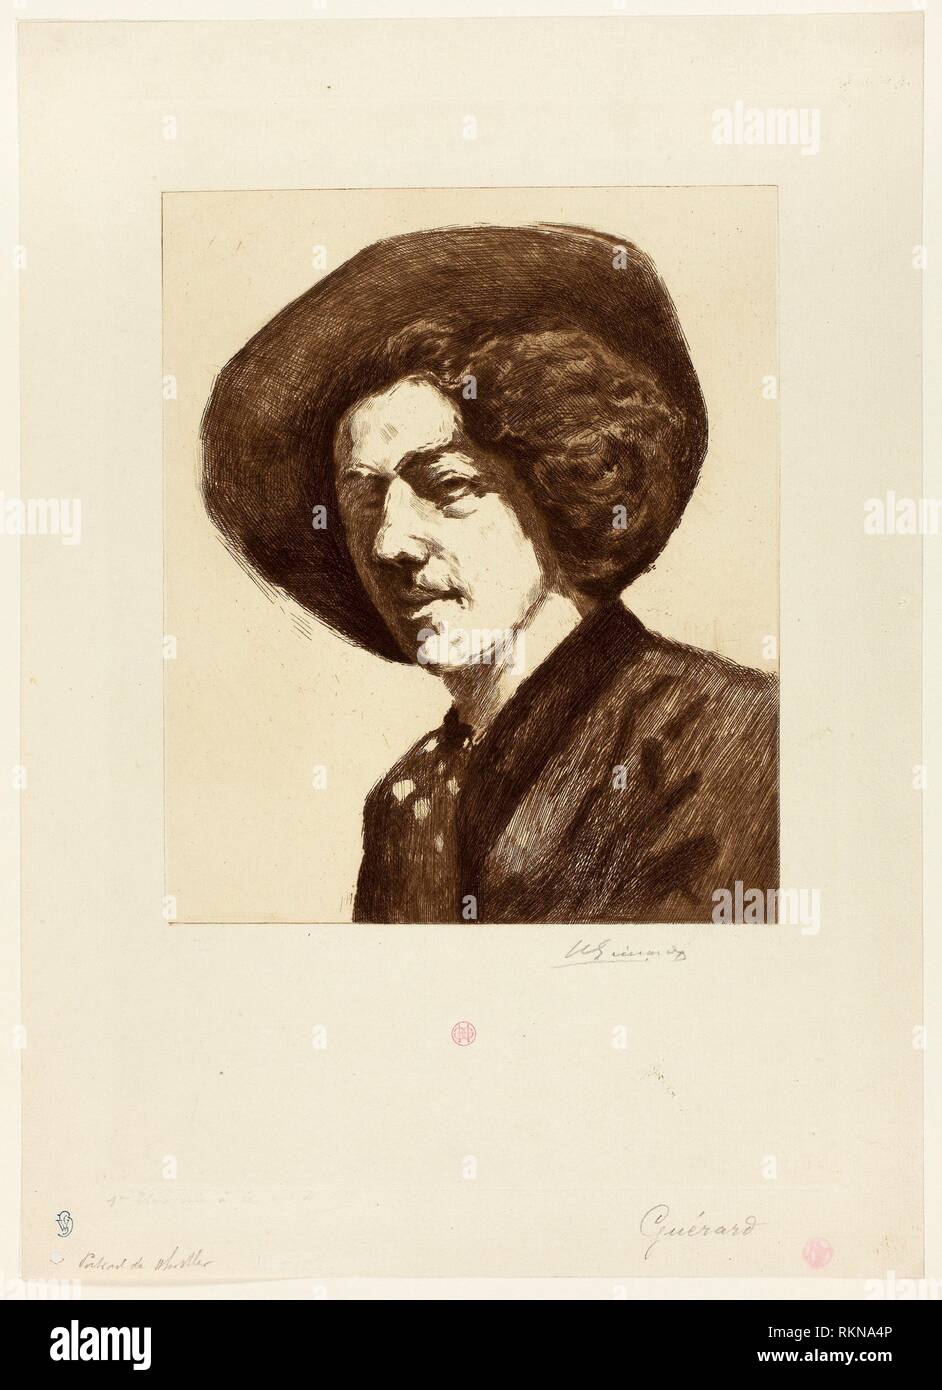 Whistler - Henri Charles Guérard French, 1846-1897 - Artist: Henri Charles Guérard, Origin: France. Stock Photo